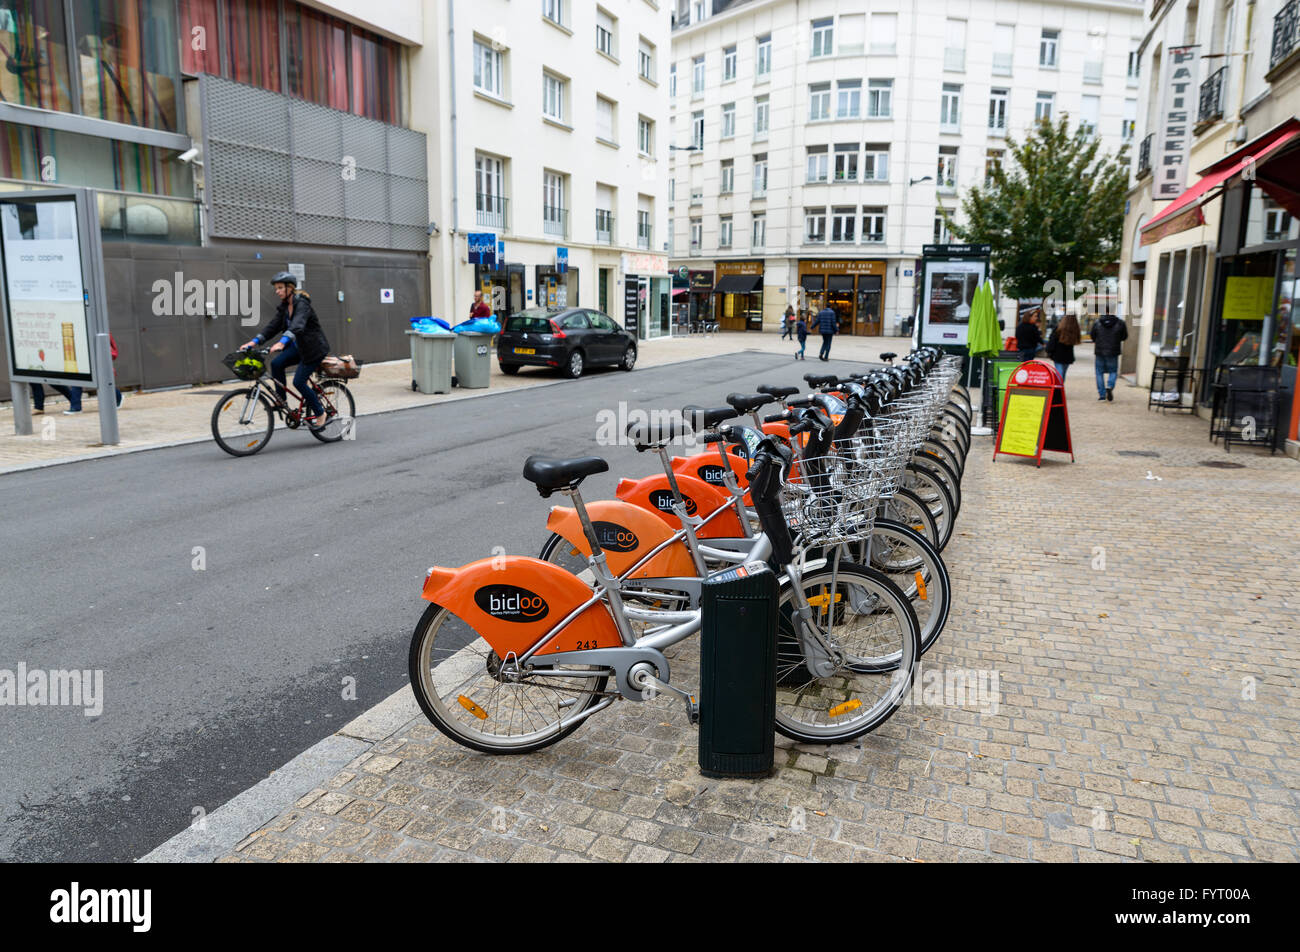 La station de Bicloo à Nantes, France. Bicloo Nantes est au système de partage de vélos. Banque D'Images